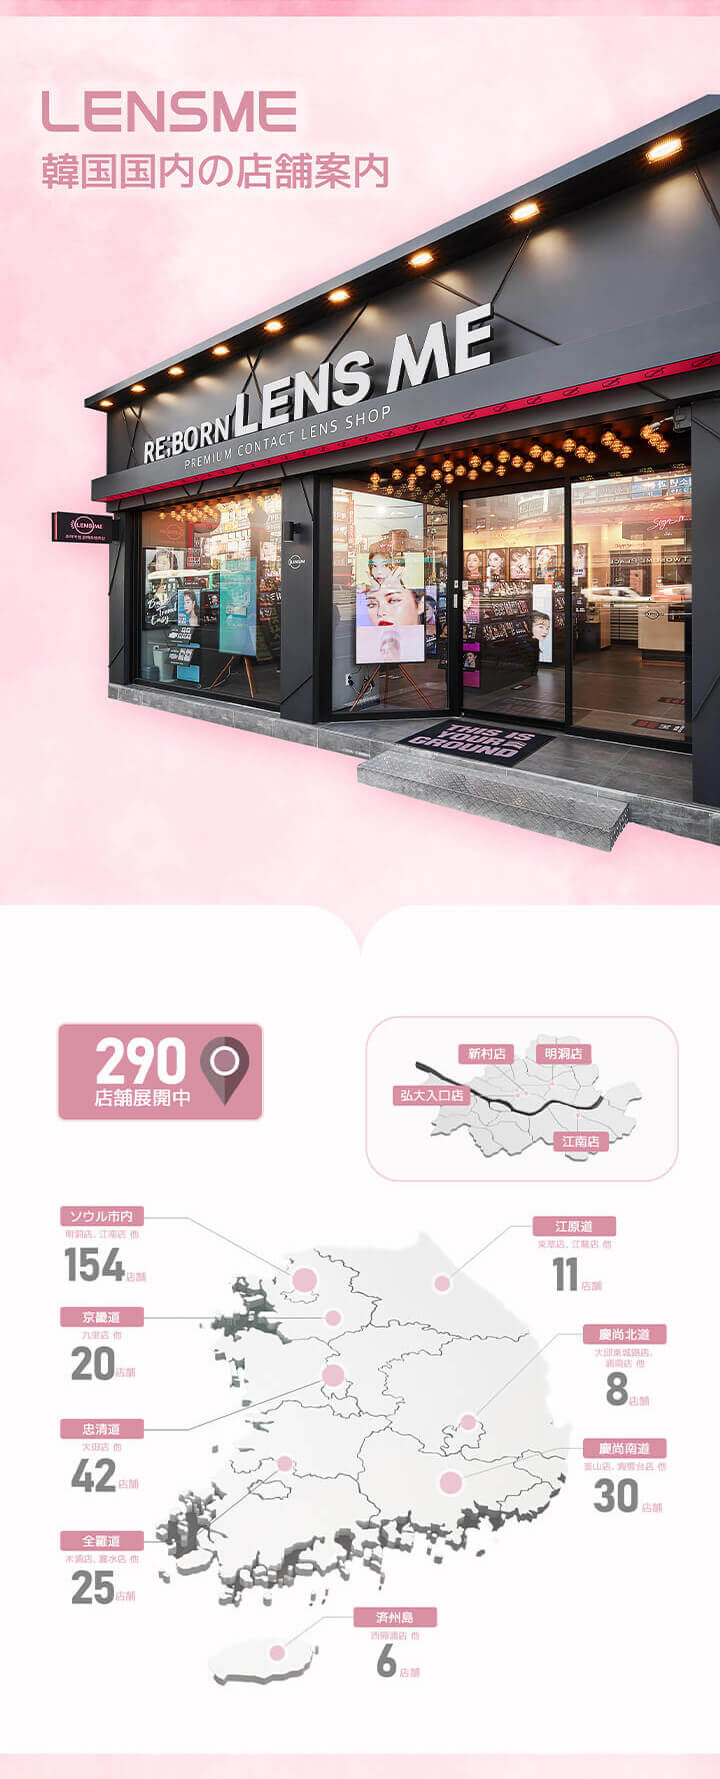 LENSME（レンズミー）韓国国内の店舗案内,290店舗展開中|エイケーエムエーバイレンズミー(AKMA BY LENSME)コンタクトレンズ